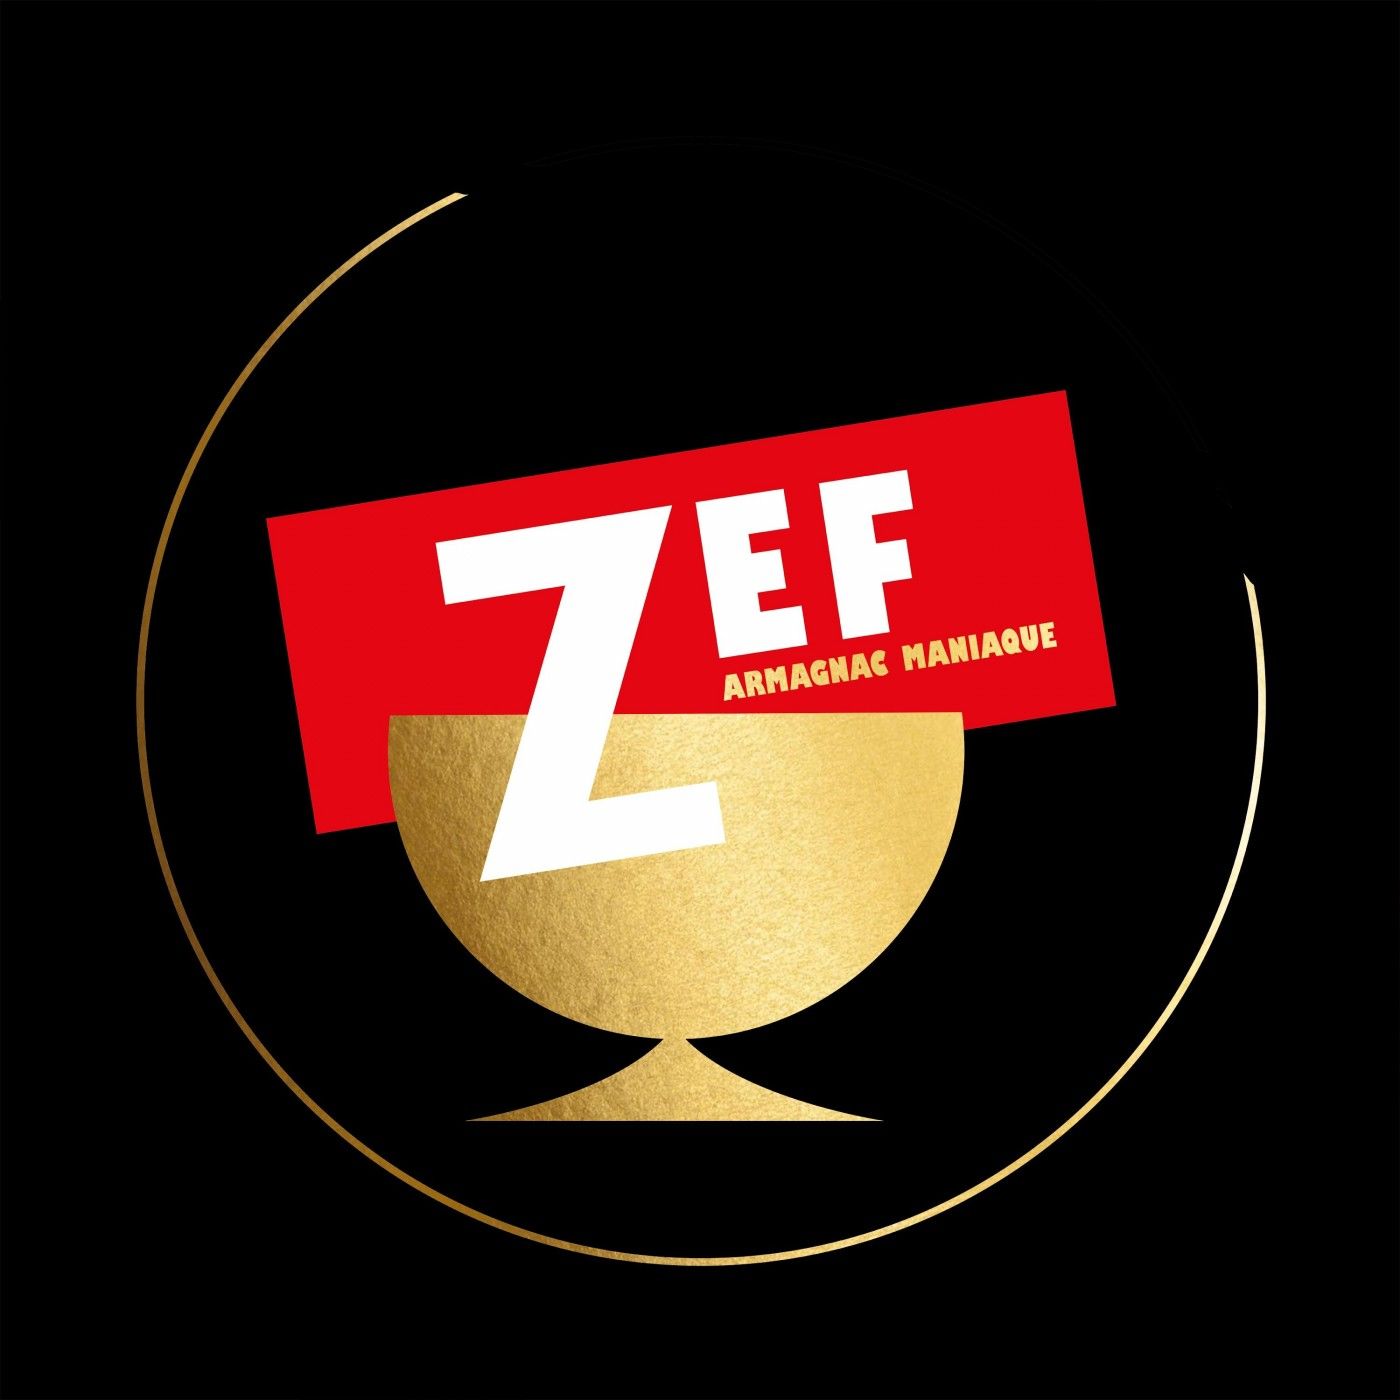 ZEF – Armagnac maniaque (2020) [FLAC 24bit/48kHz]